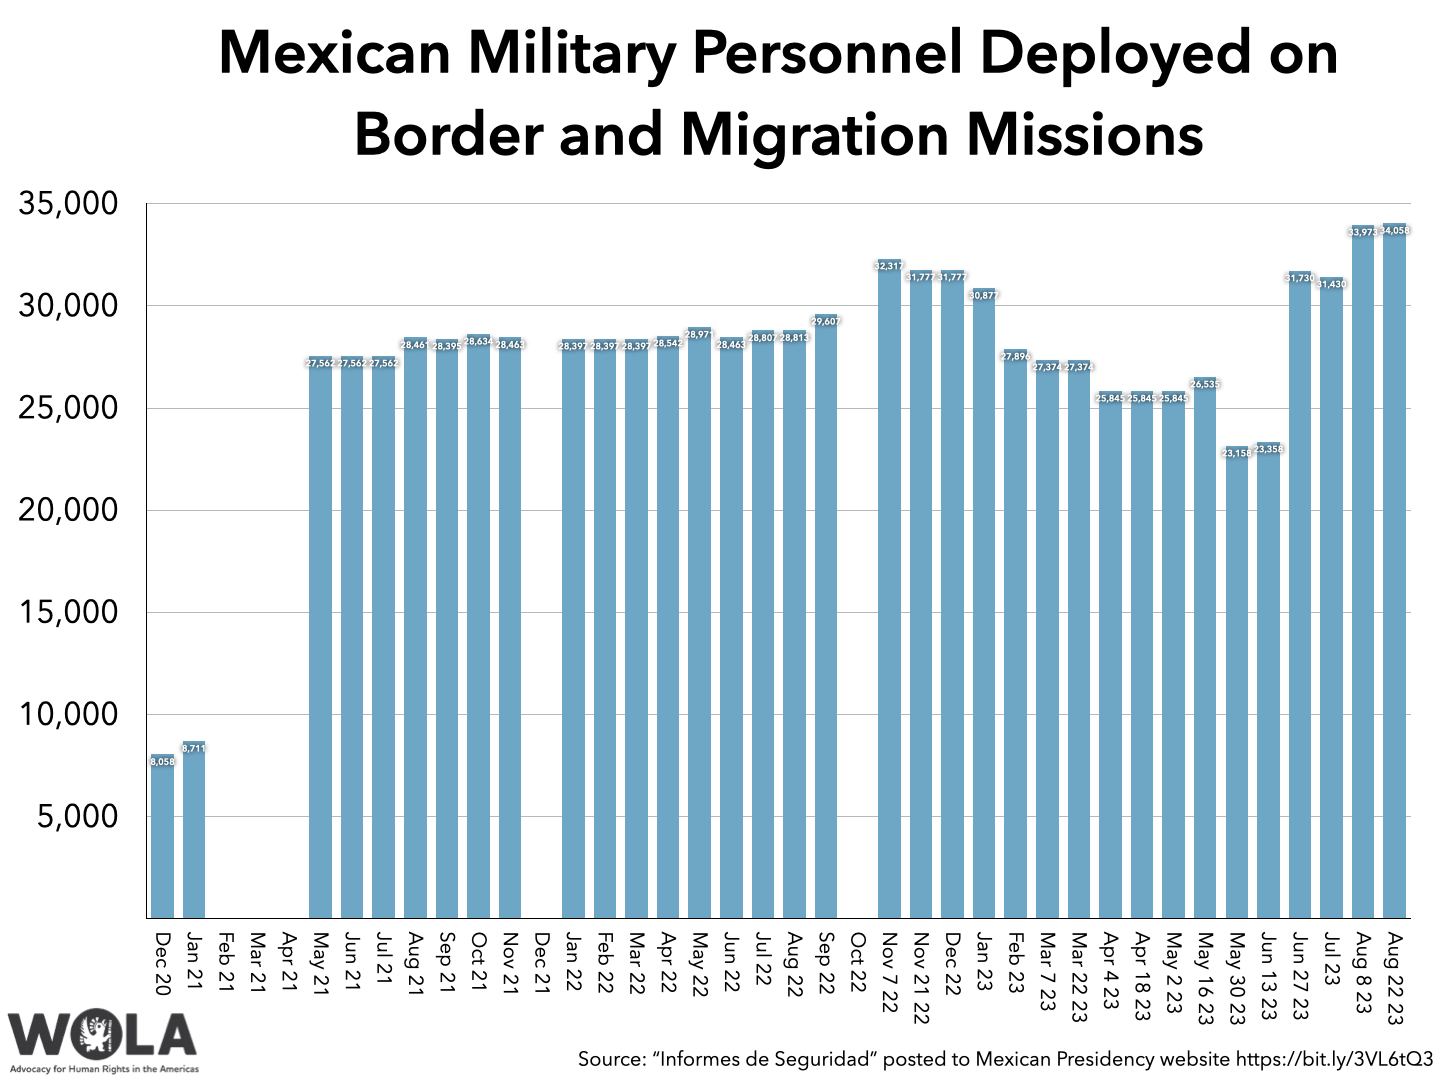 Chart data:

	Military Personnel assigned to "Plan de Migración en la Frontera Norte y Sur"
20-Dec	8058
21-Jan	8711
21-Feb	
21-Mar	
21-Apr	
21-May	27562
21-Jun	27562
21-Jul	27562
21-Aug	28461
21-Sep	28395
21-Oct	28634
21-Nov	28463
21-Dec	
22-Jan	28397
22-Feb	28397
22-Mar	28397
22-Apr	28542
22-May	28971
22-Jun	28463
22-Jul	28807
22-Aug	28813
22-Sep	29607
22-Oct	
Nov 7 22	32317
Nov 21 22	31777
22-Dec	31777
23-Jan	30877
23-Feb	27896
Mar 7 23	27374
Mar 22 23	27374
Apr 4 23	25845
Apr 18 23	25845
May 2 23	25845
May 16 23	26535
May 30 23	23158
Jun 13 23	23358
Jun 27 23	31730
23-Jul	31430
Aug 8 23	33973
Aug 22 23	34058